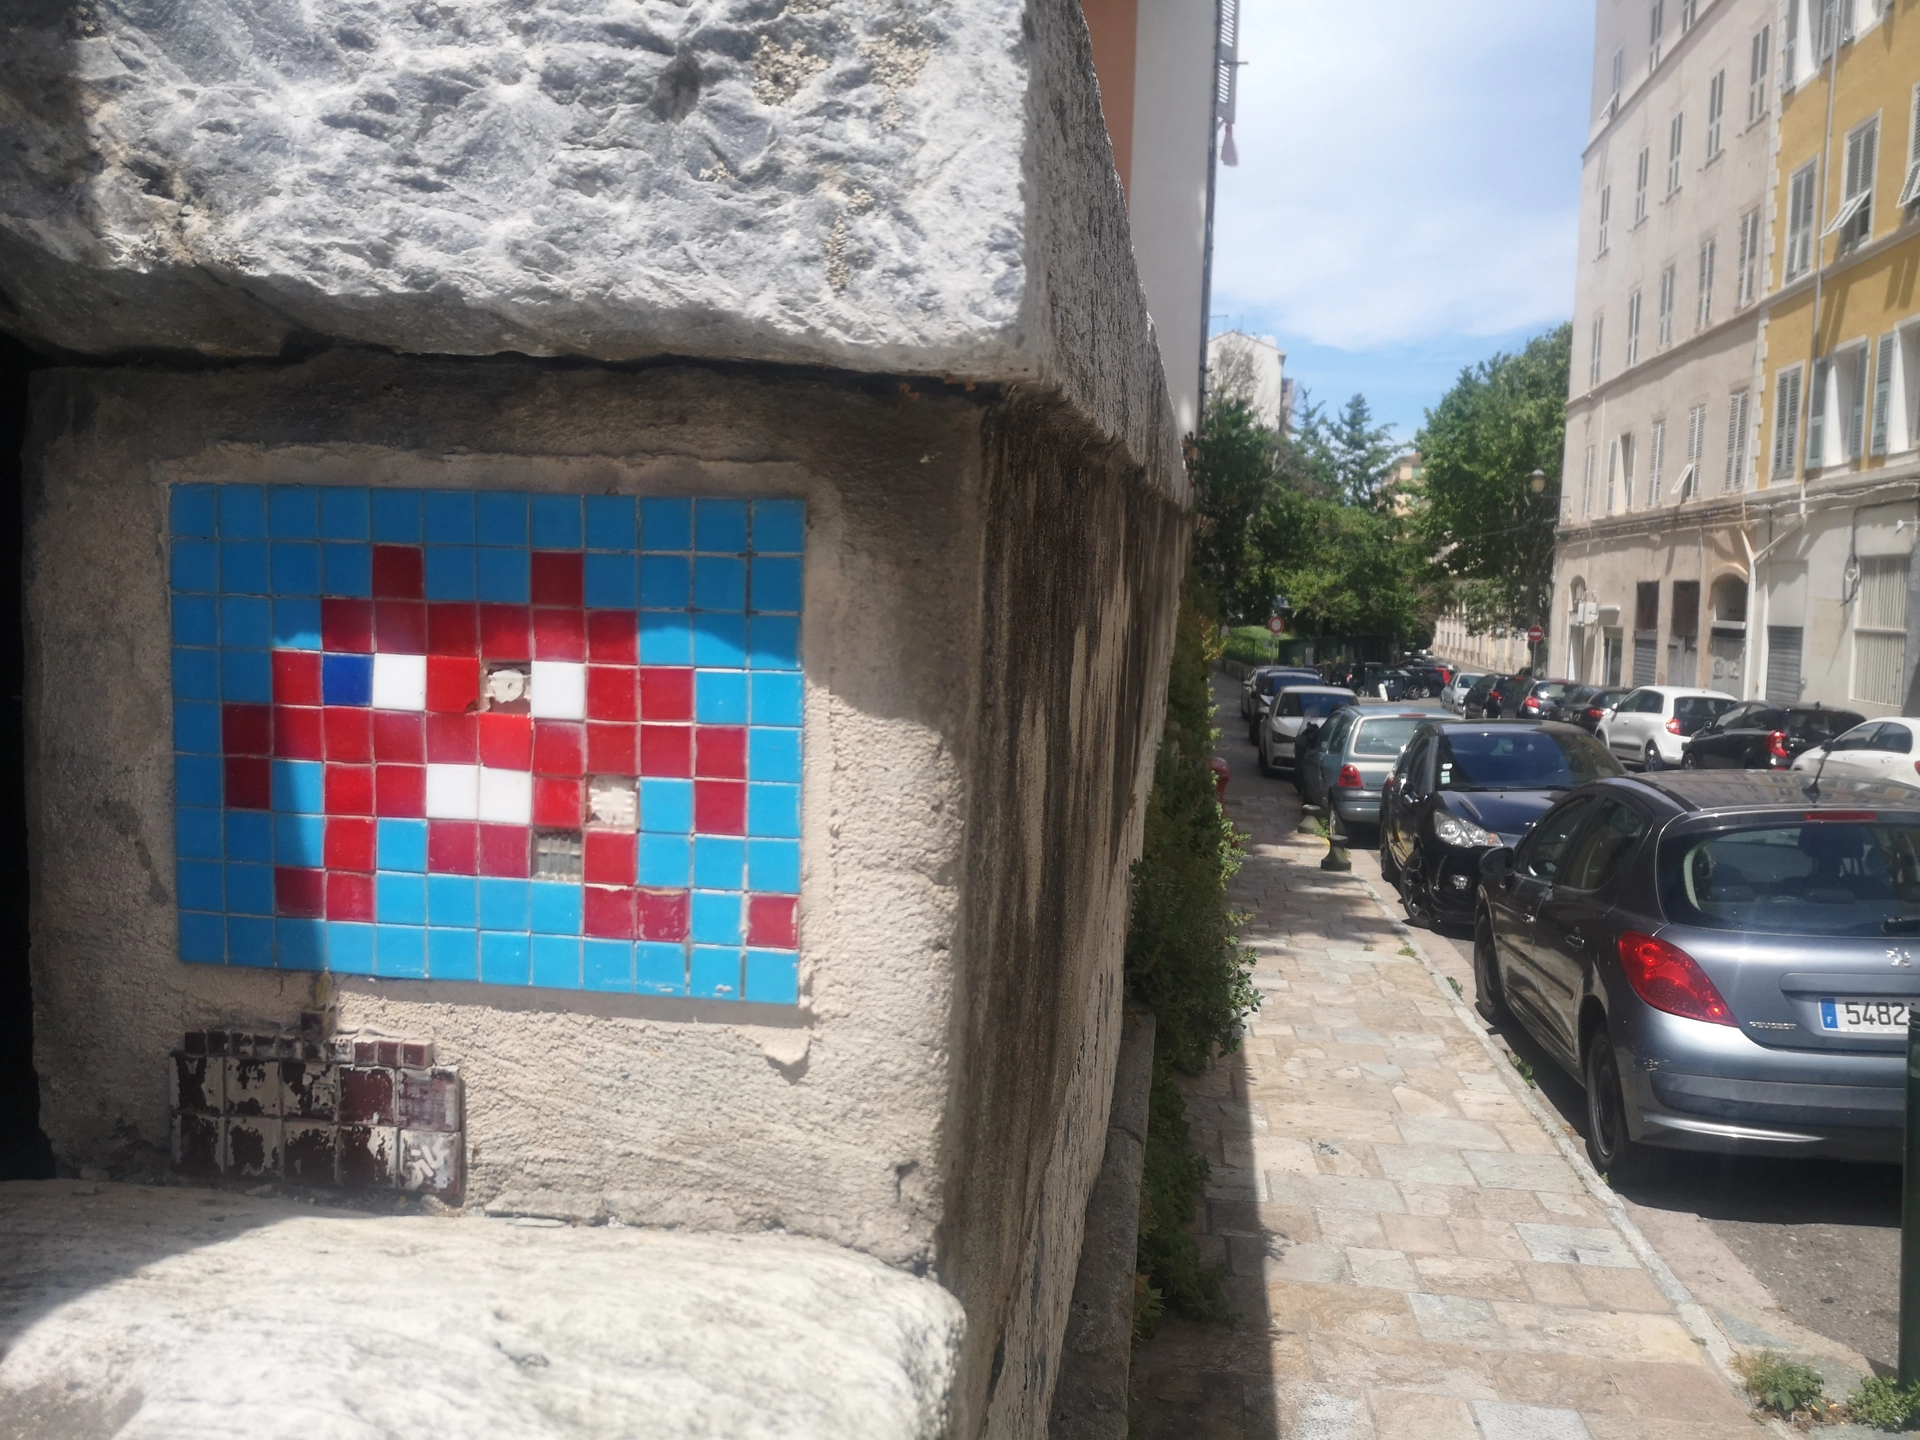 Oeuvre de Street Art réalisée par Invader à Bastia